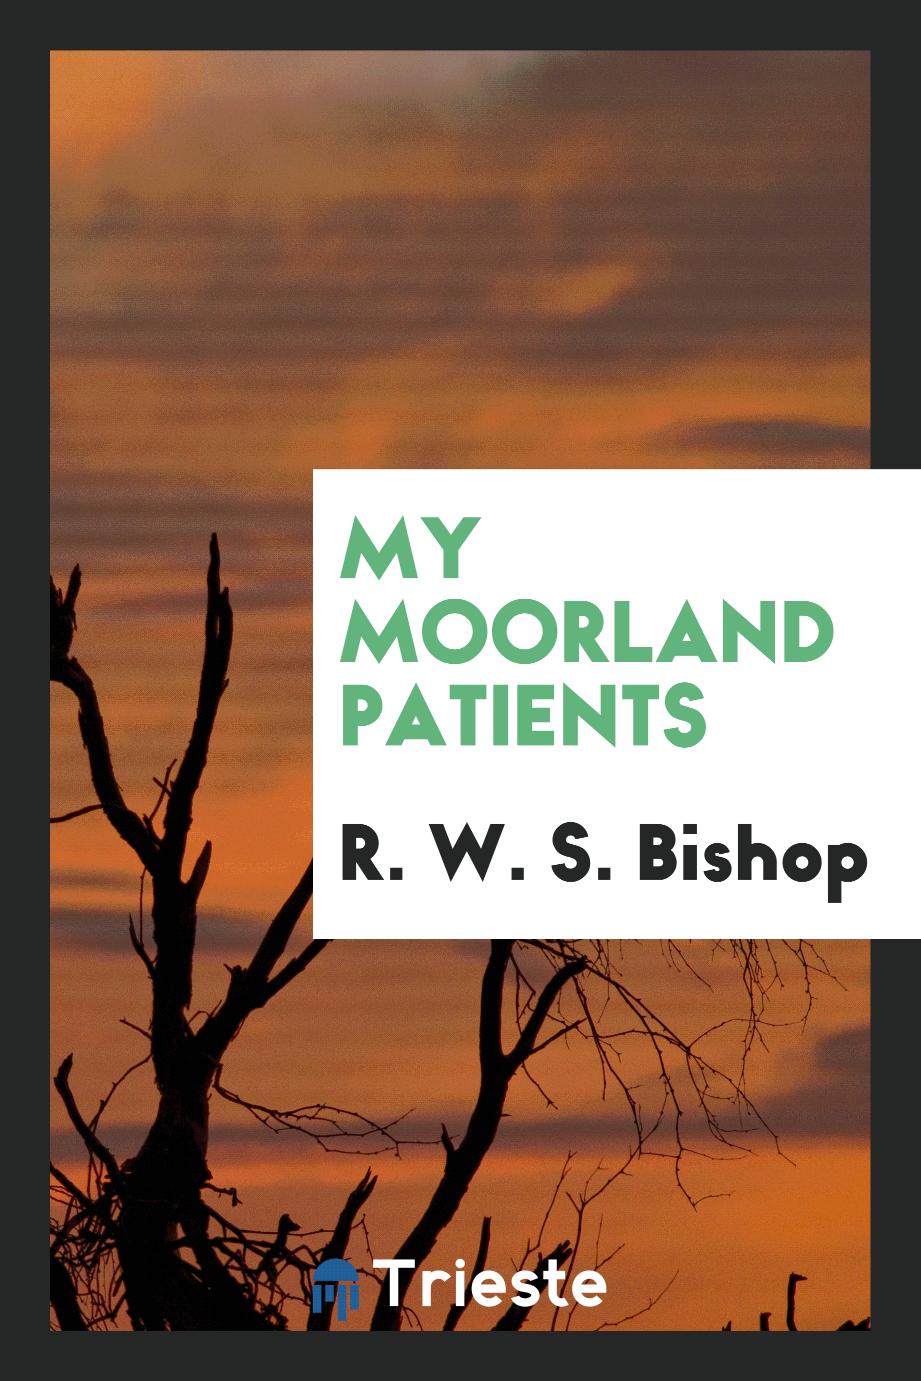 My moorland patients